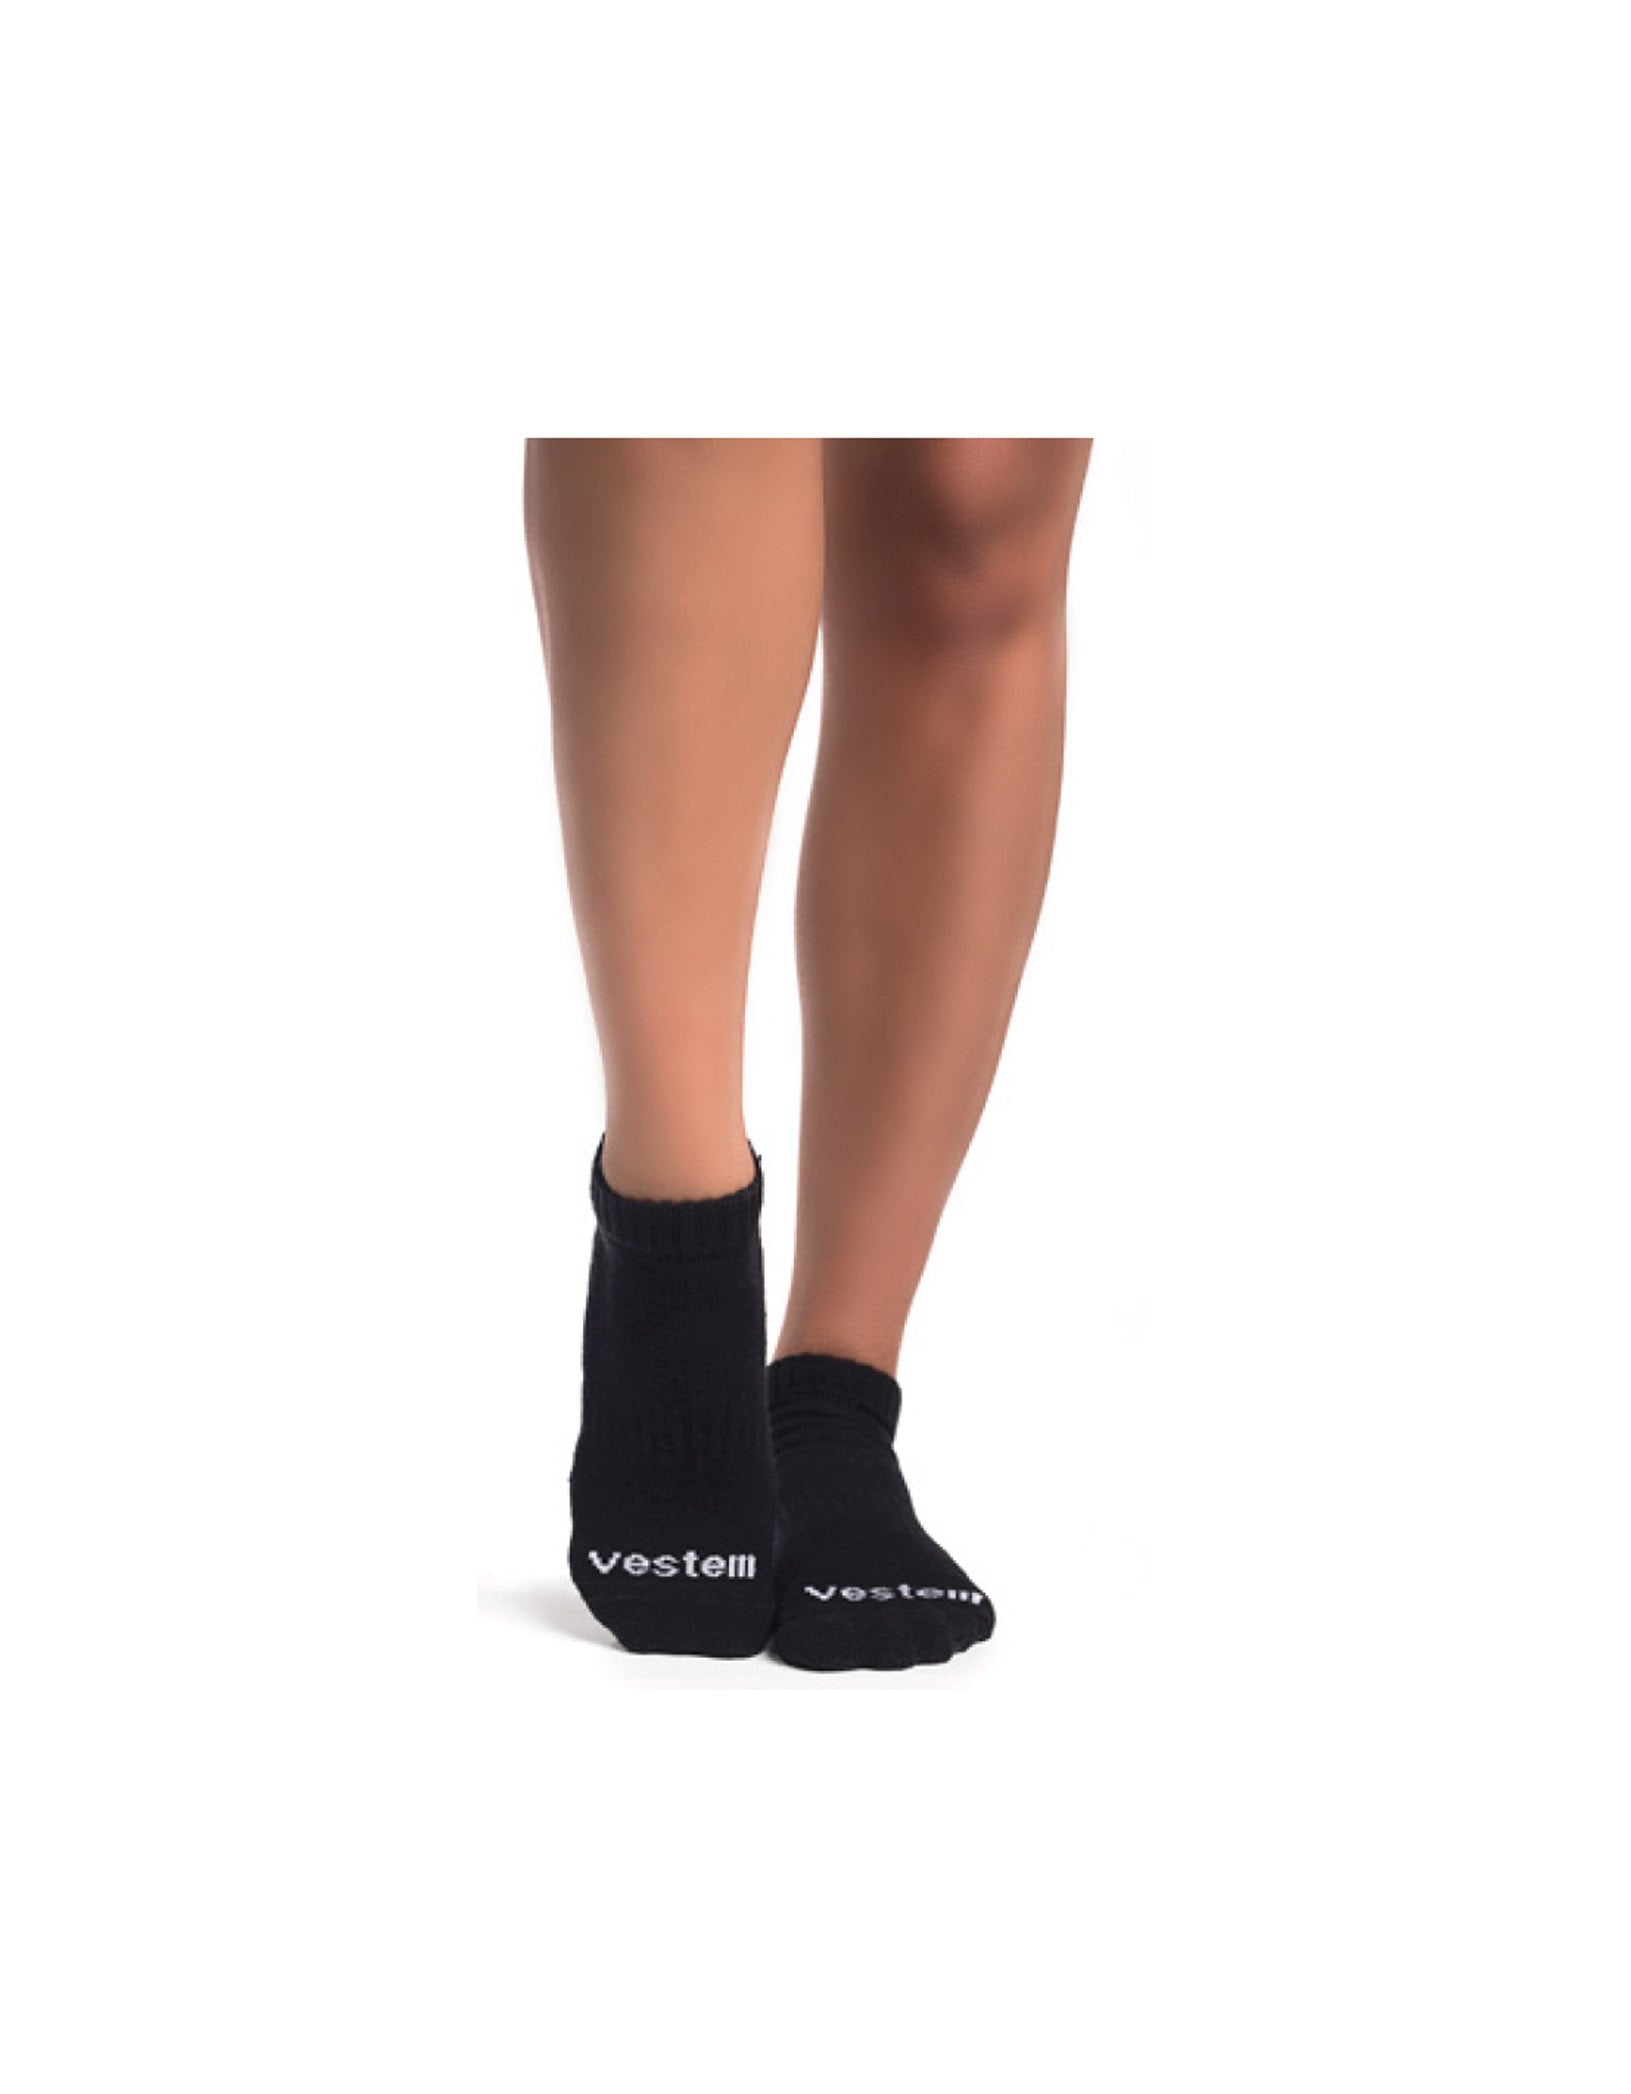 Vestem - Socks Try Try Again Non-Slip Sneakers Black With White Writing - MEI08.C0002